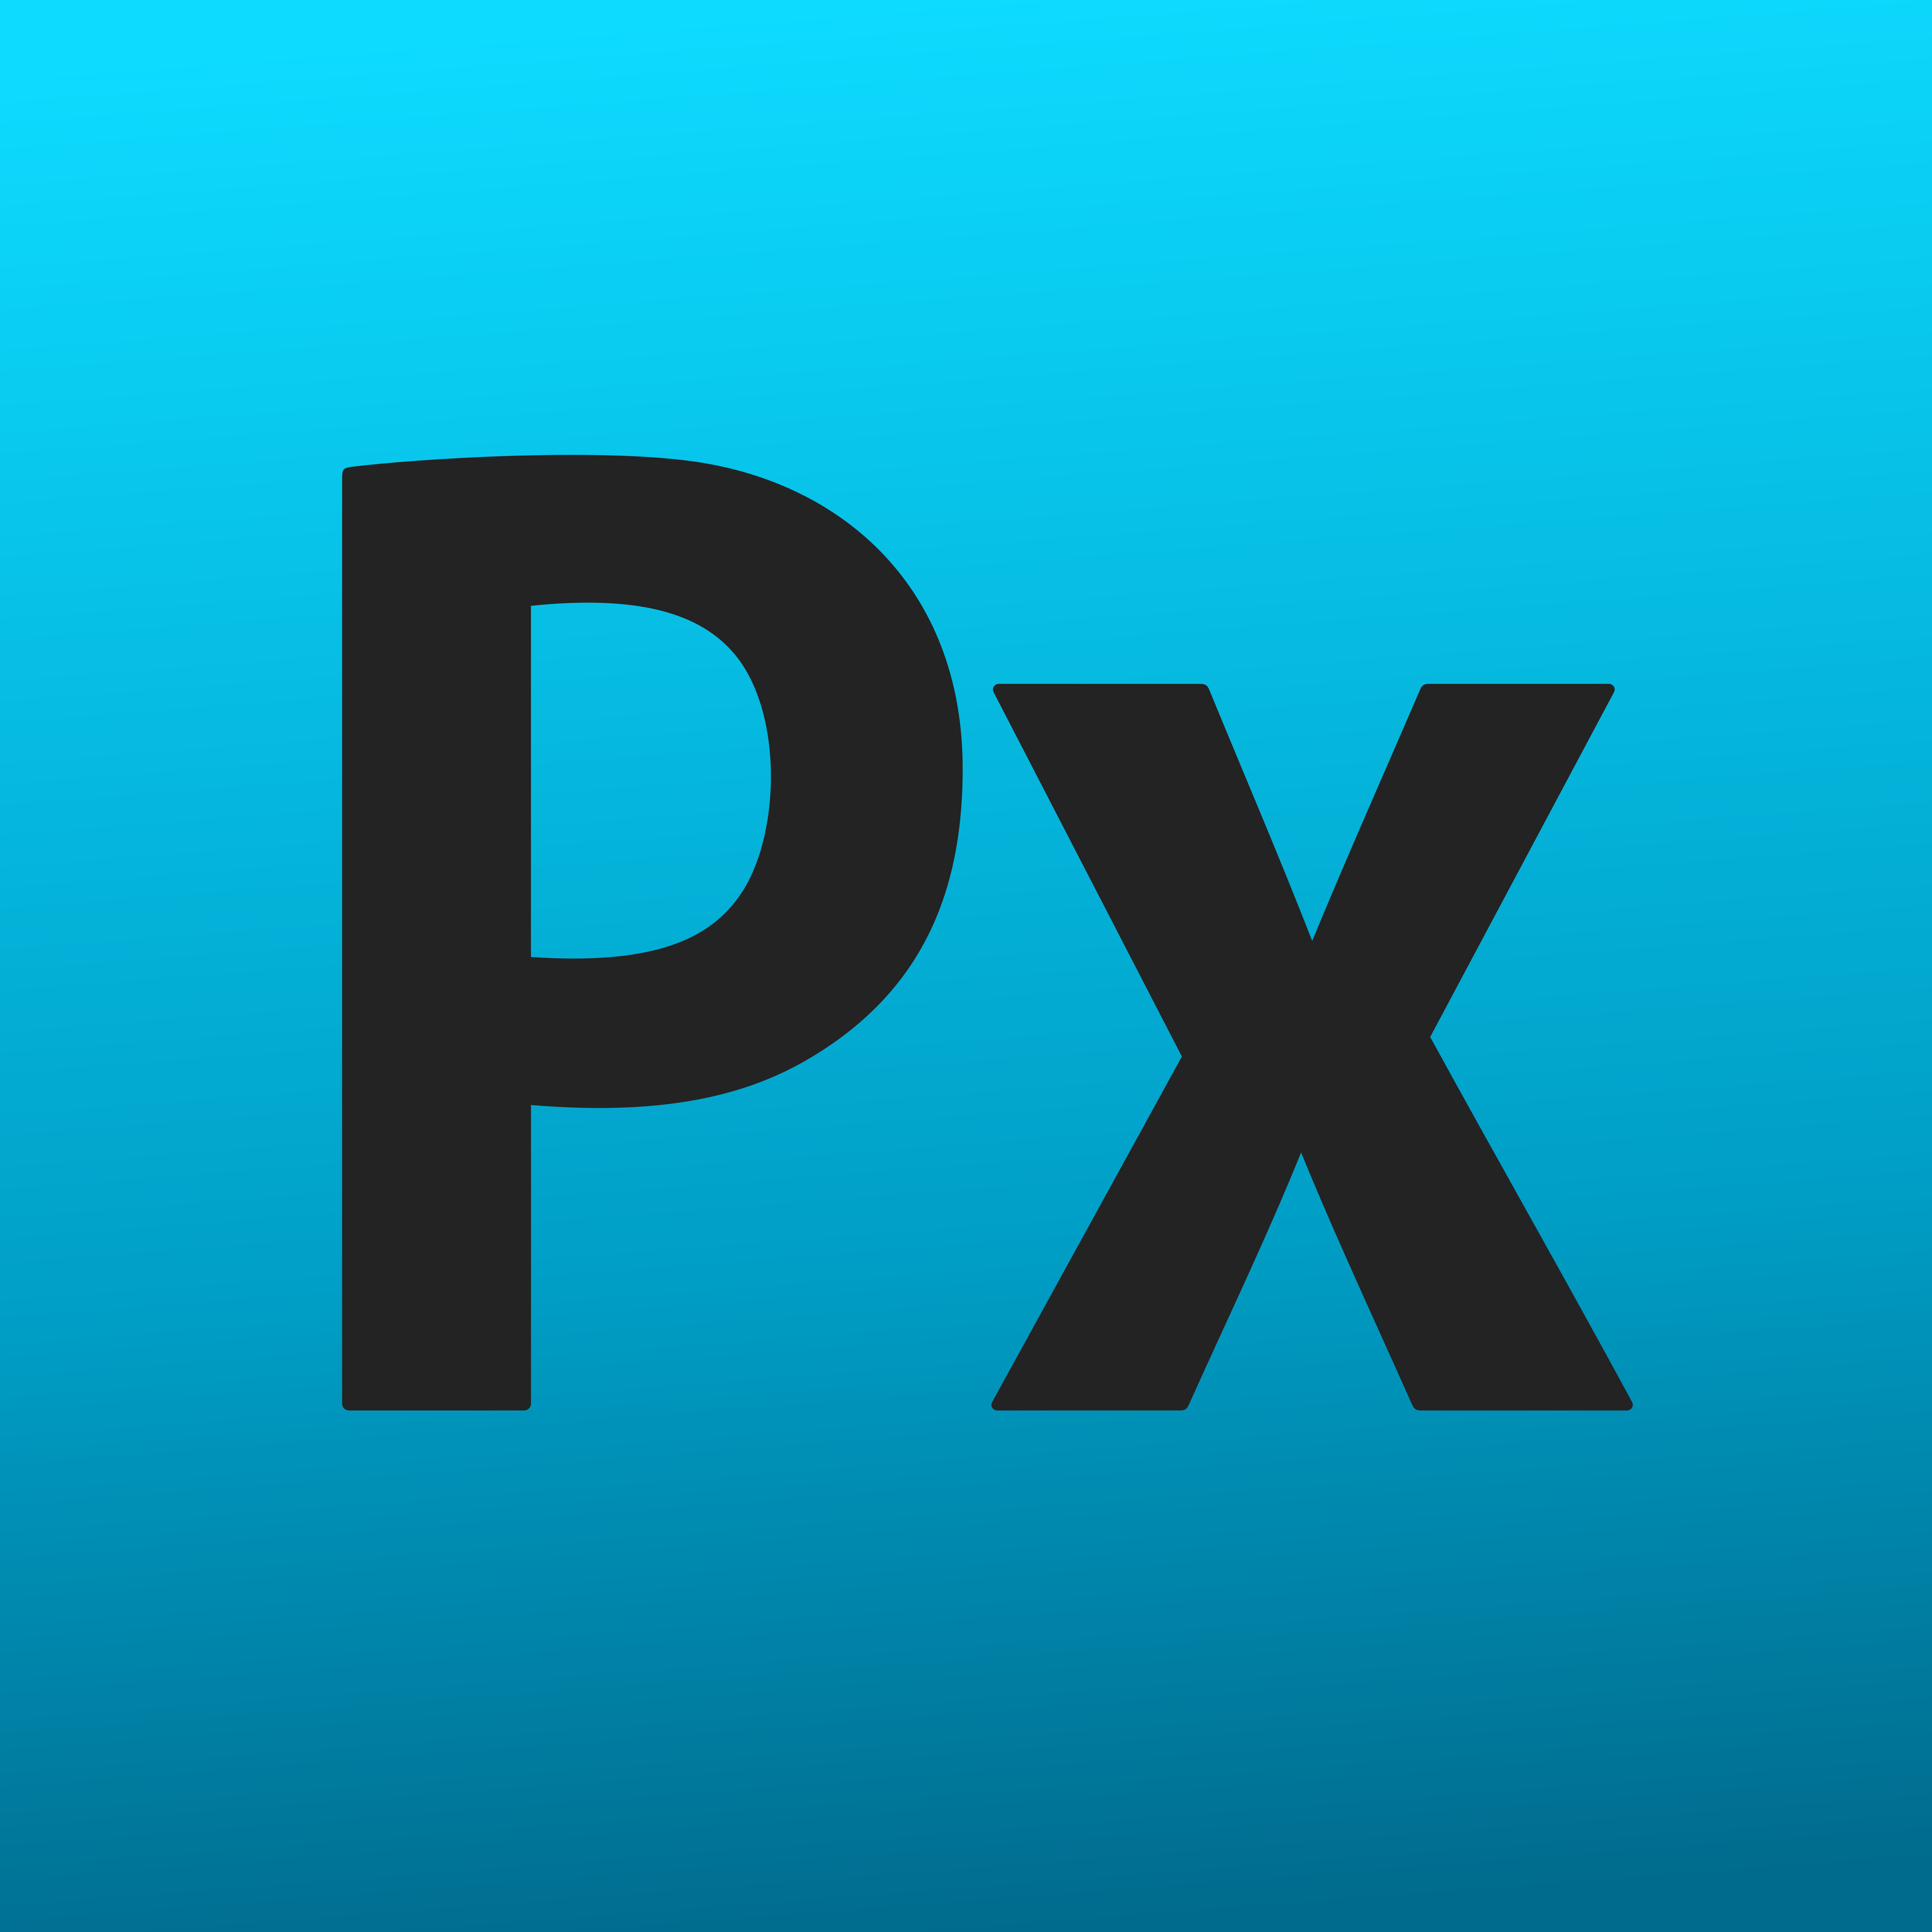  Adobe  Photoshop  Express Logos  Download